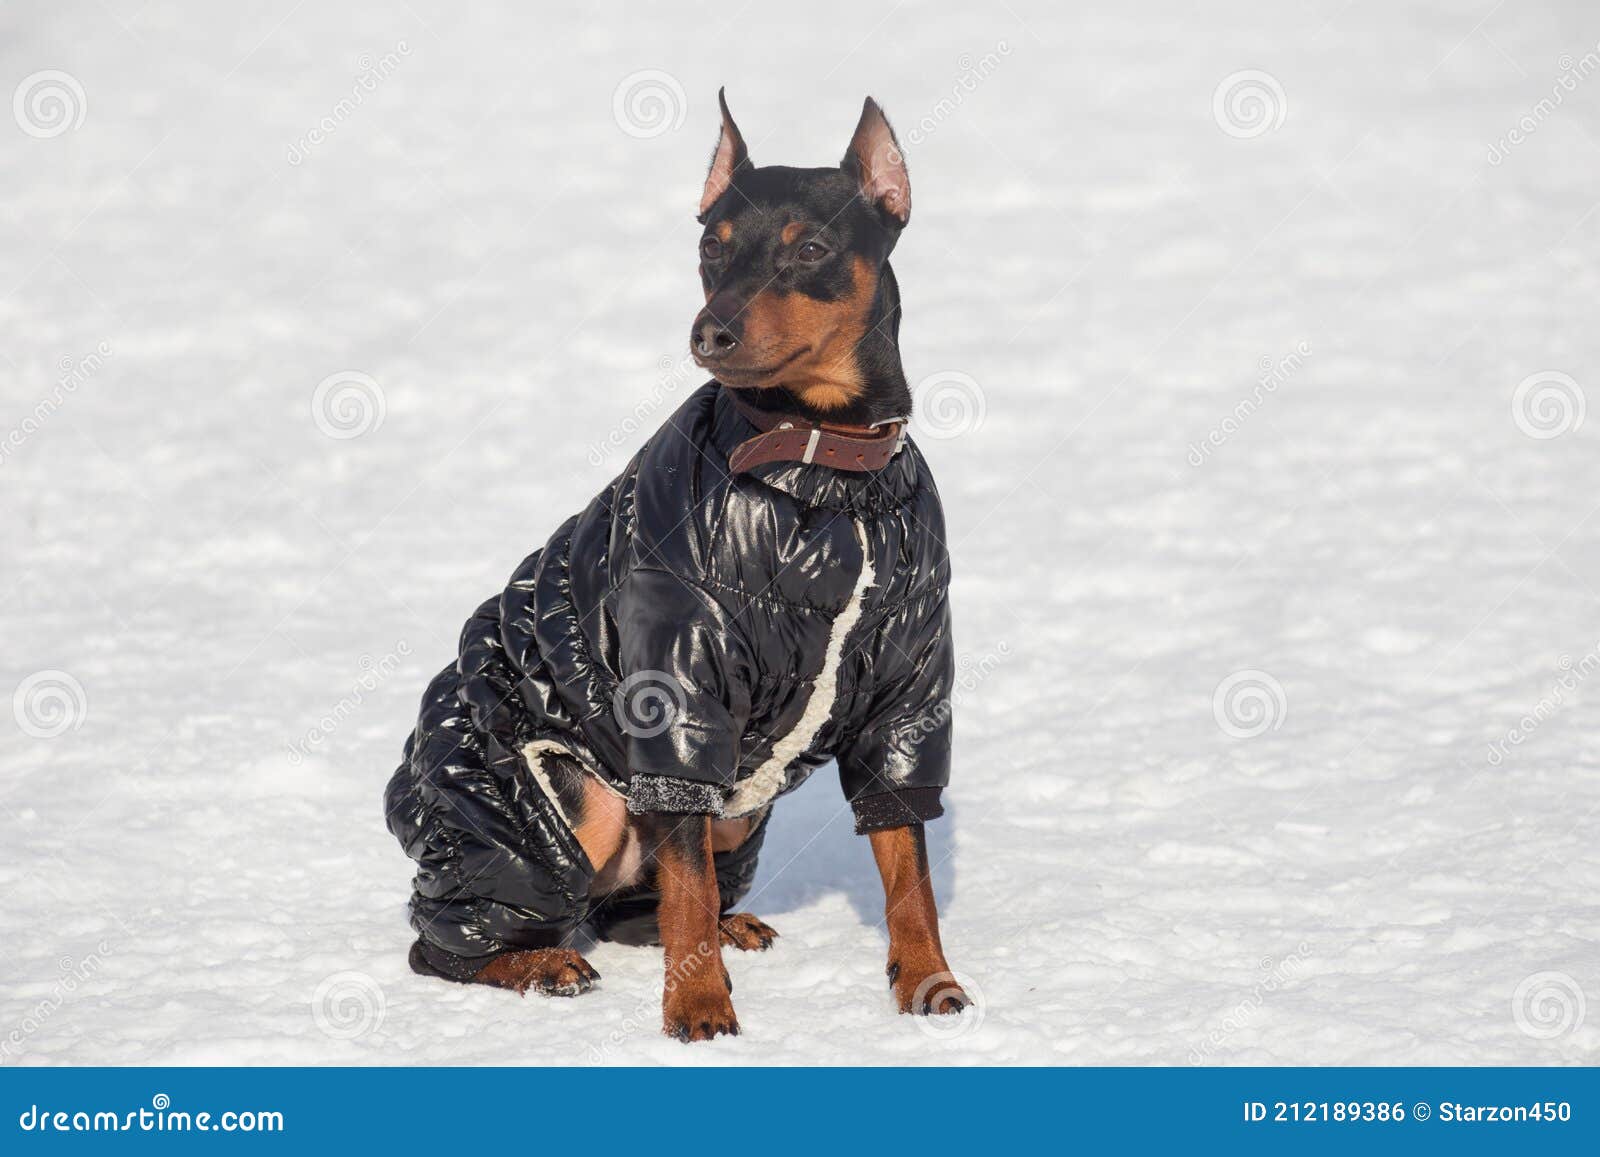 Cachorro Miniatura En Negro Ropa De Está Sentado En Una Nieve Blanca En El Parque De Invierno. Animales Foto de archivo - Imagen de perrera, club: 212189386